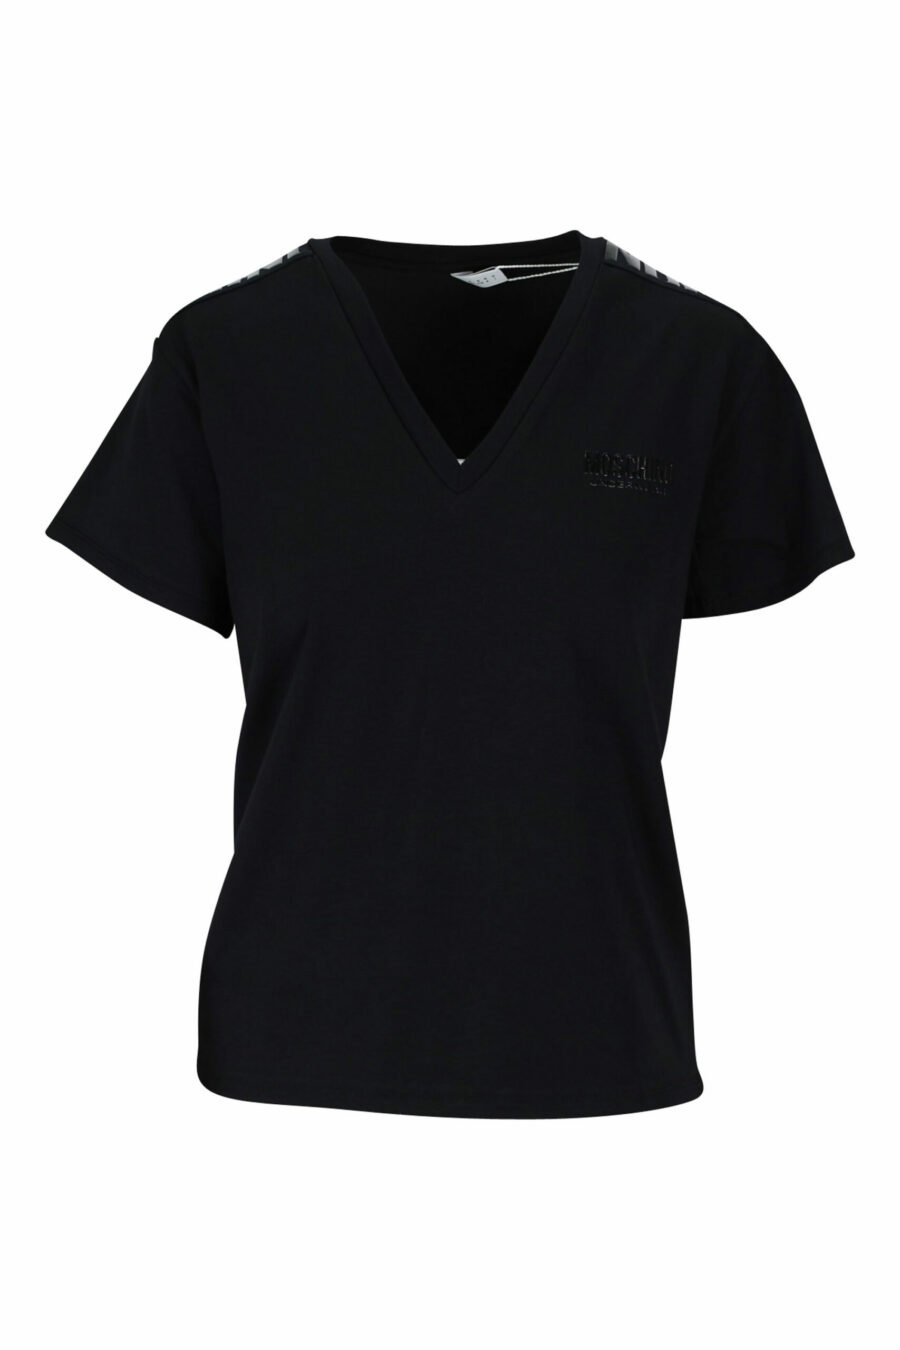 T-shirt preta com decote em V e logótipo de fita monocromática - 889316614954 scaled